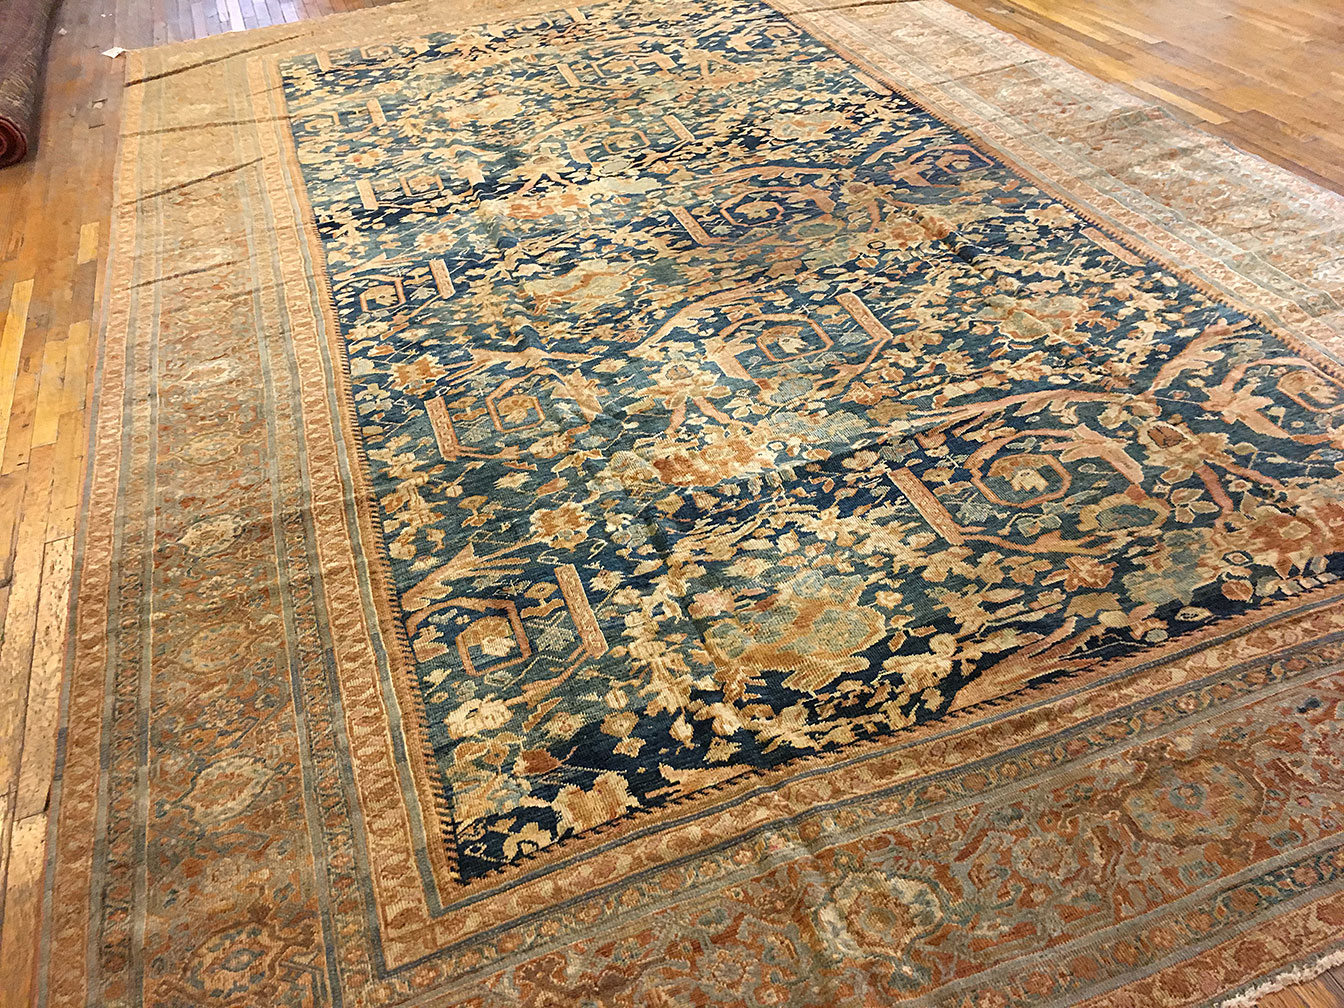 Antique sultan abad Carpet - # 51095